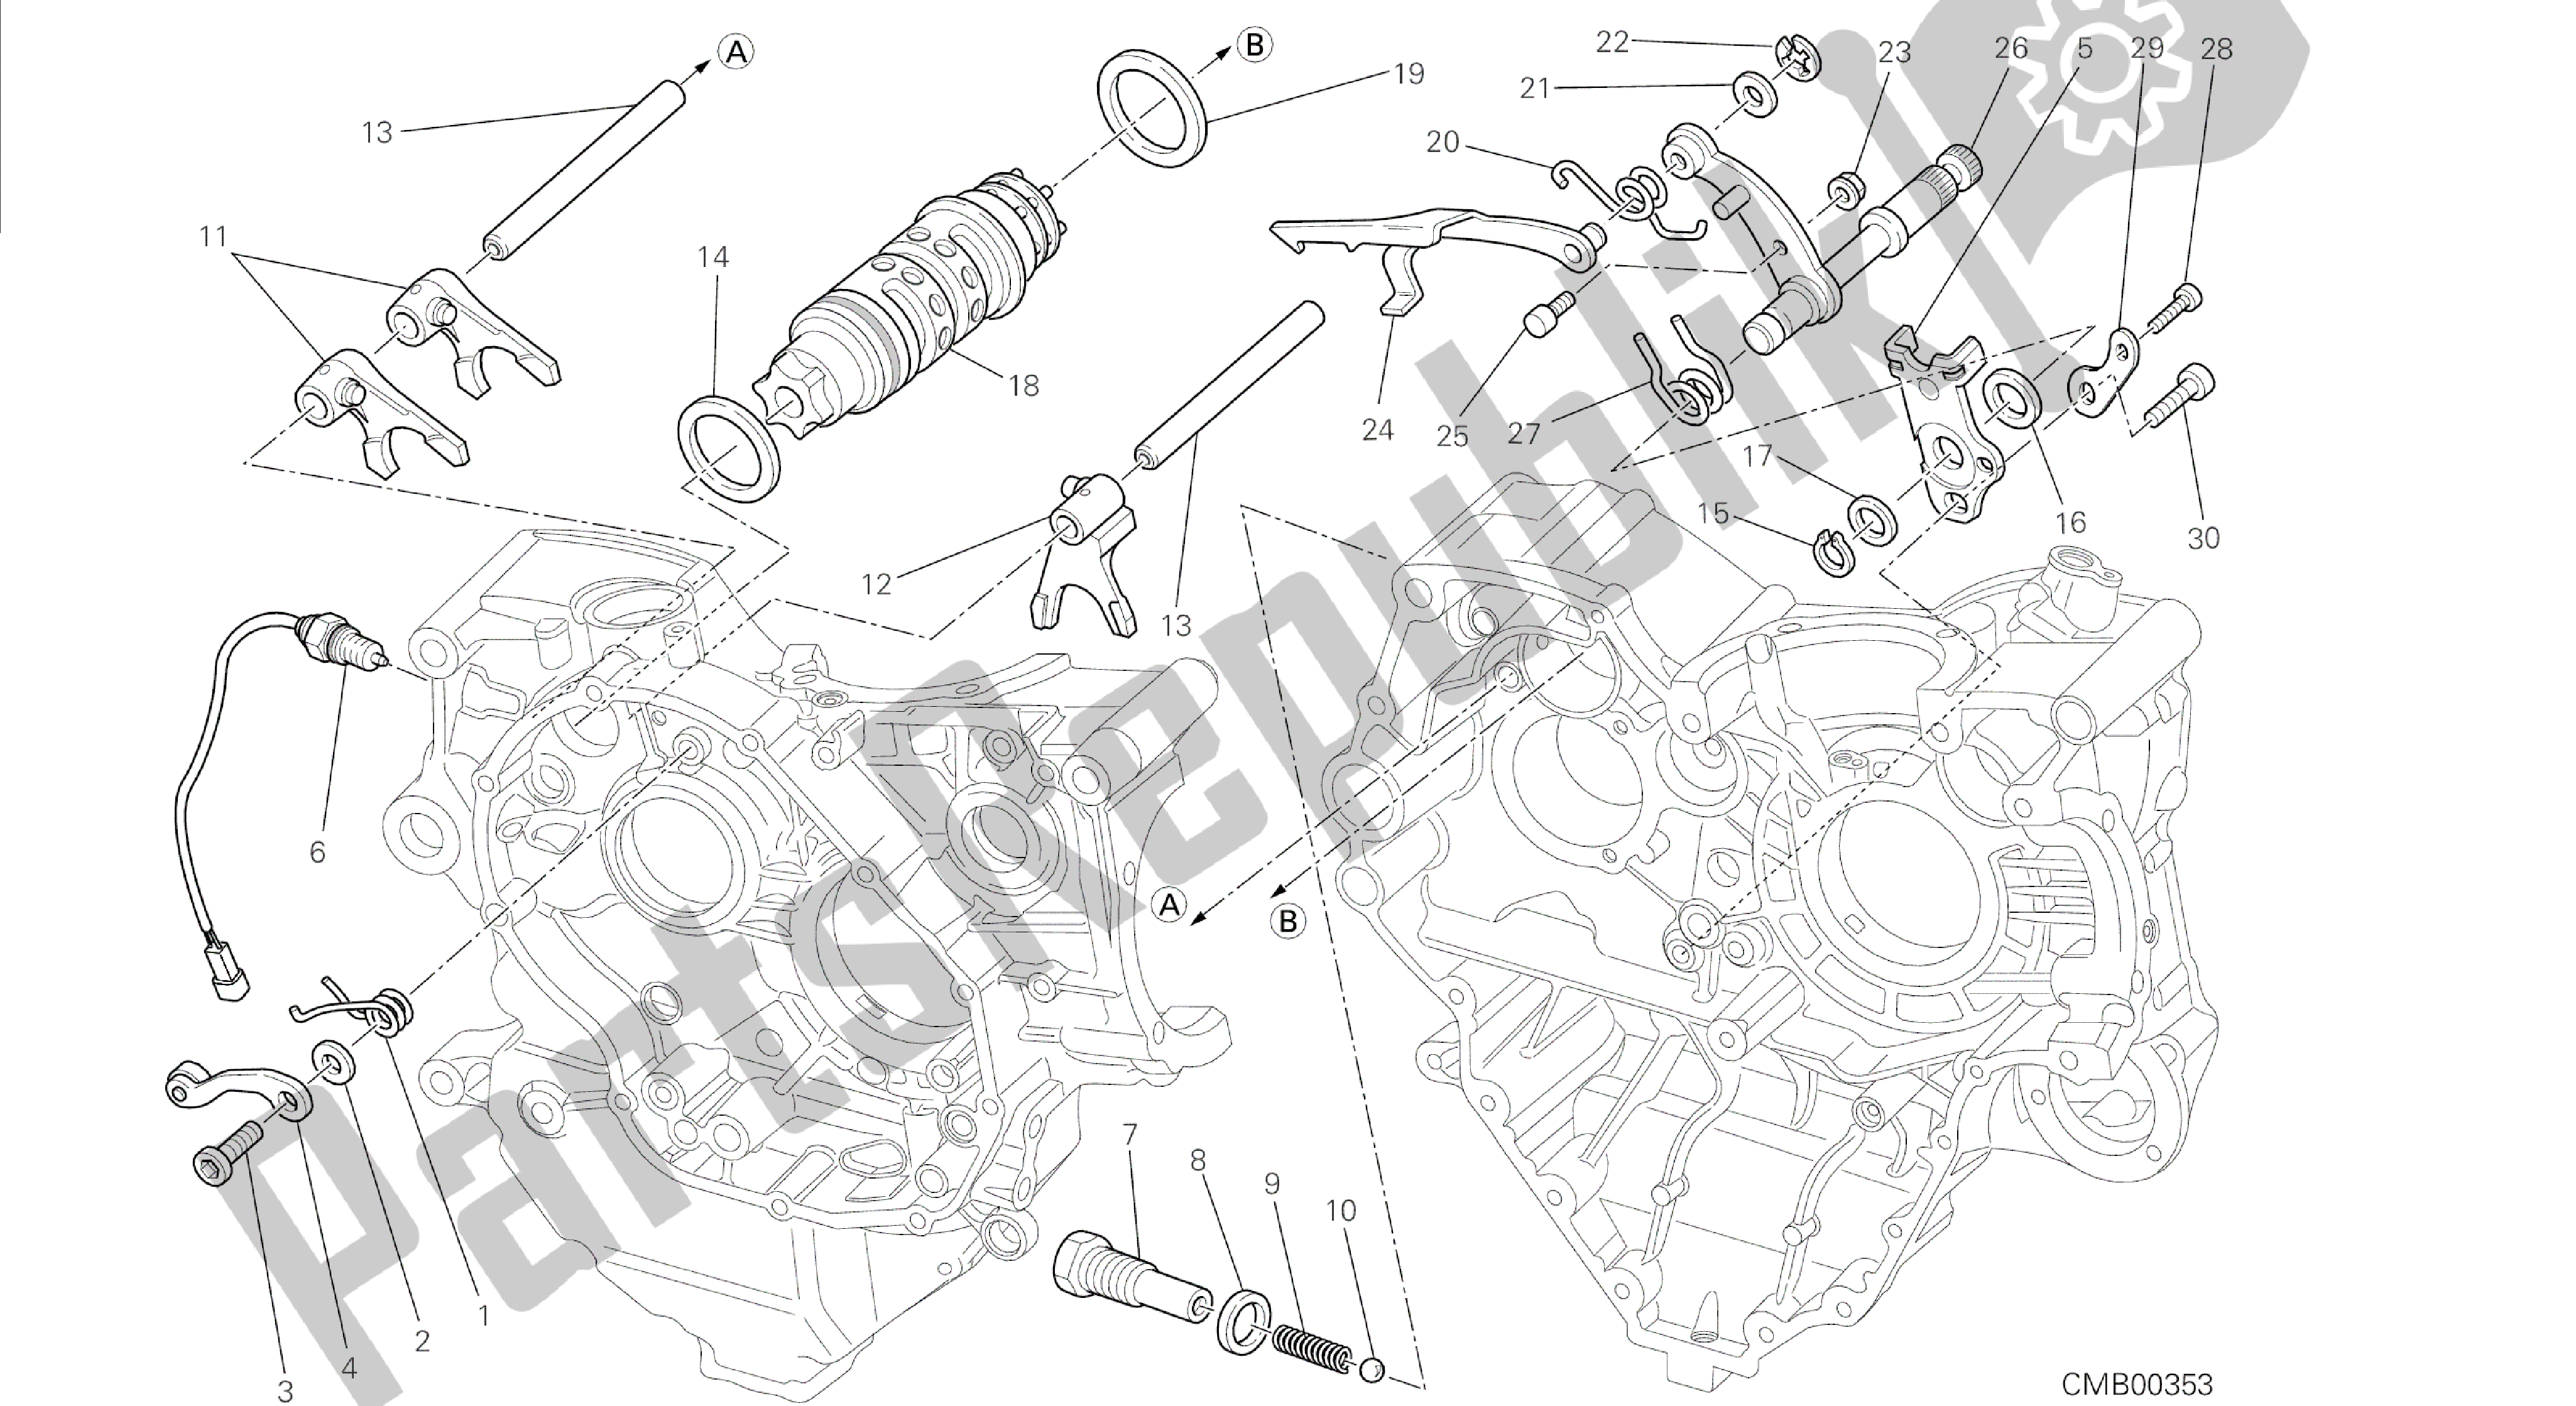 Todas las partes para Dibujo 002 - Motor De Grupo De Control De Cambio De Marcha [mod: Dvl] de Ducati Diavel 1200 2014